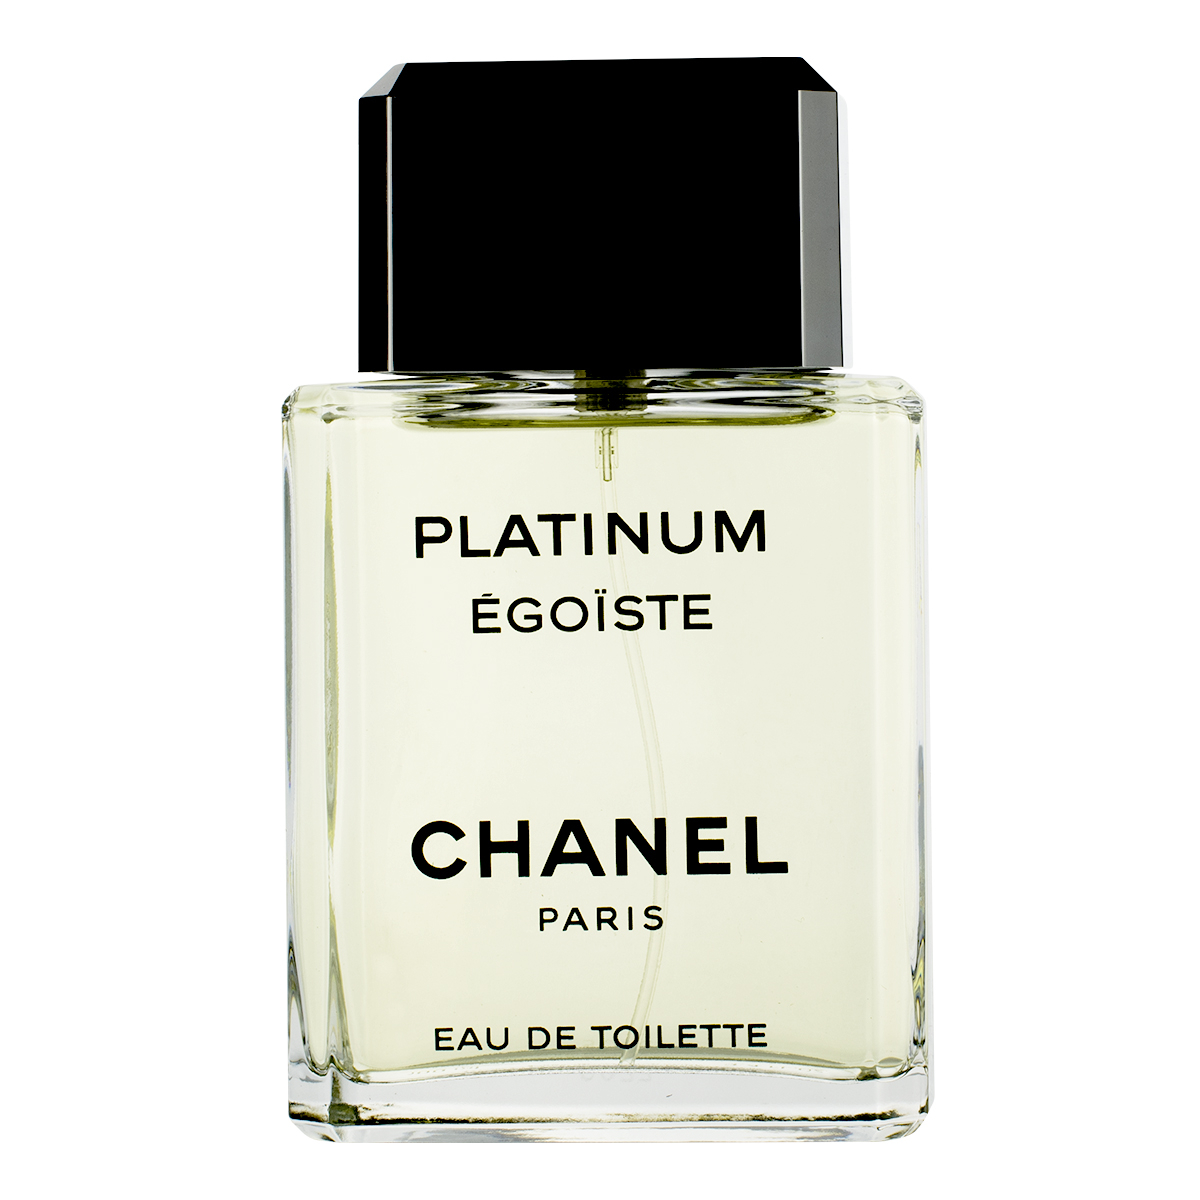 Chanel Egoiste Platinum Eau de Toilette Spray 100ml